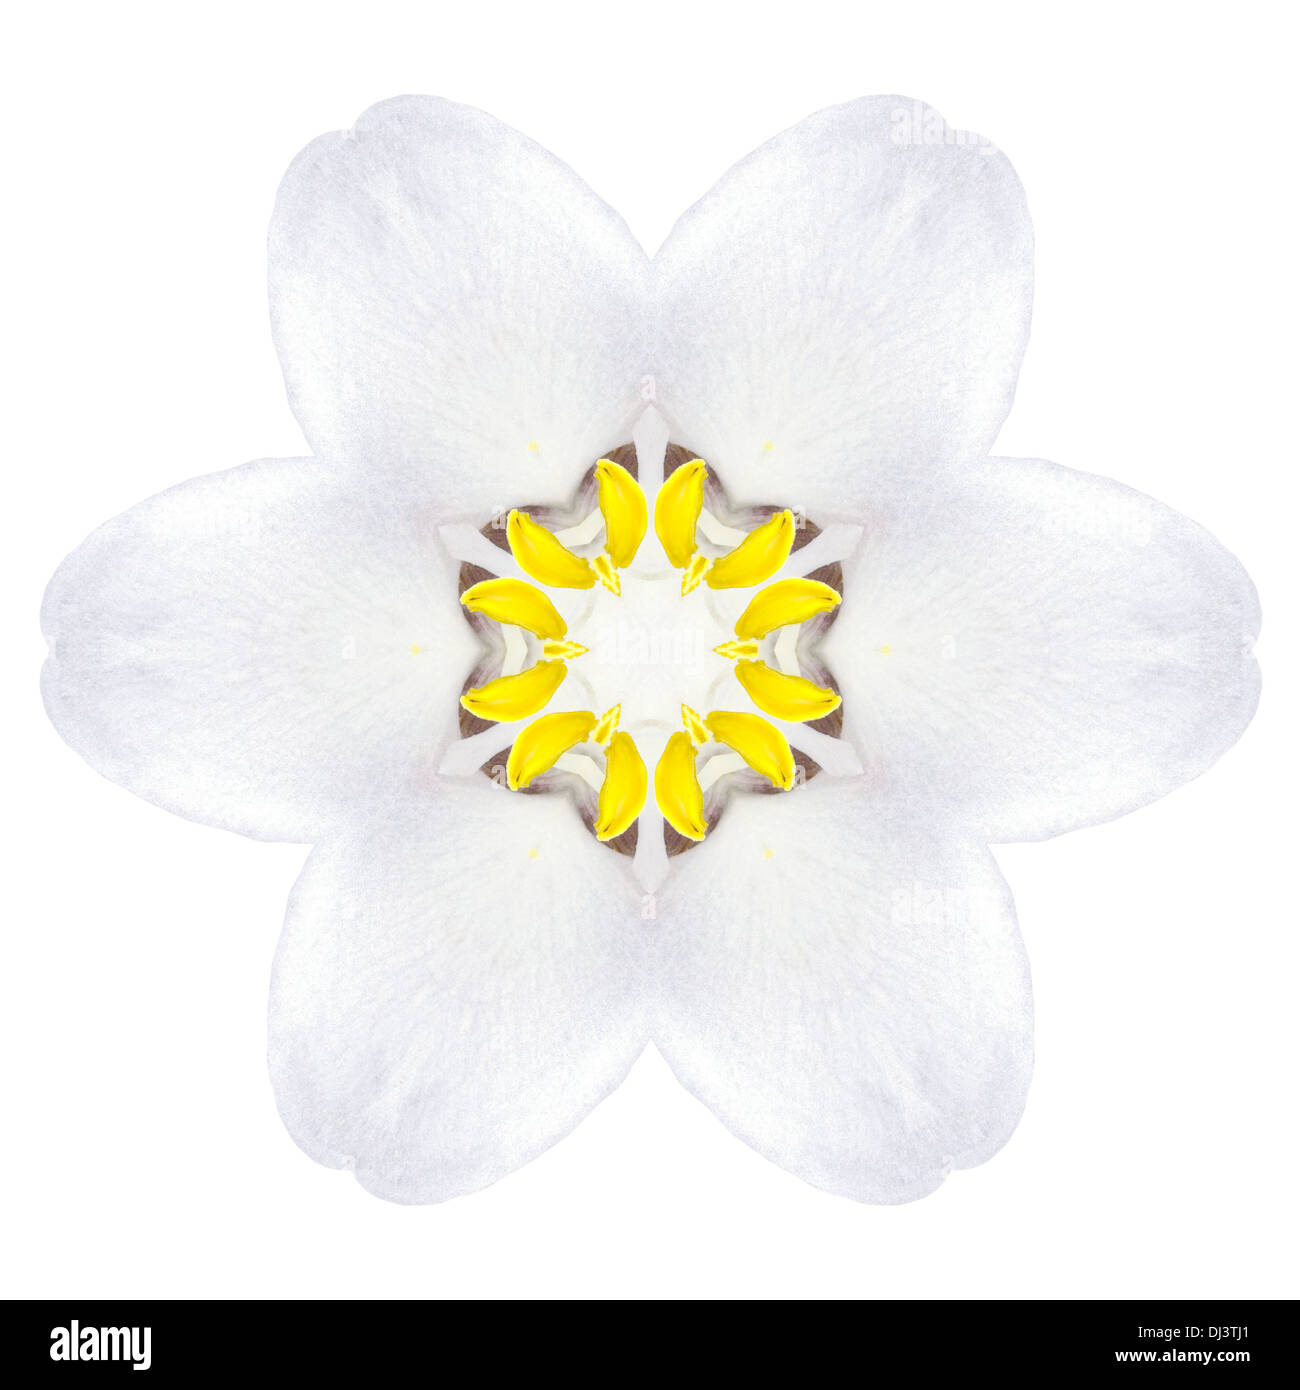 White Concentric Trillum Flower Isolated on Plain Background. Kaleidoscopic Mandala Design Stock Photo